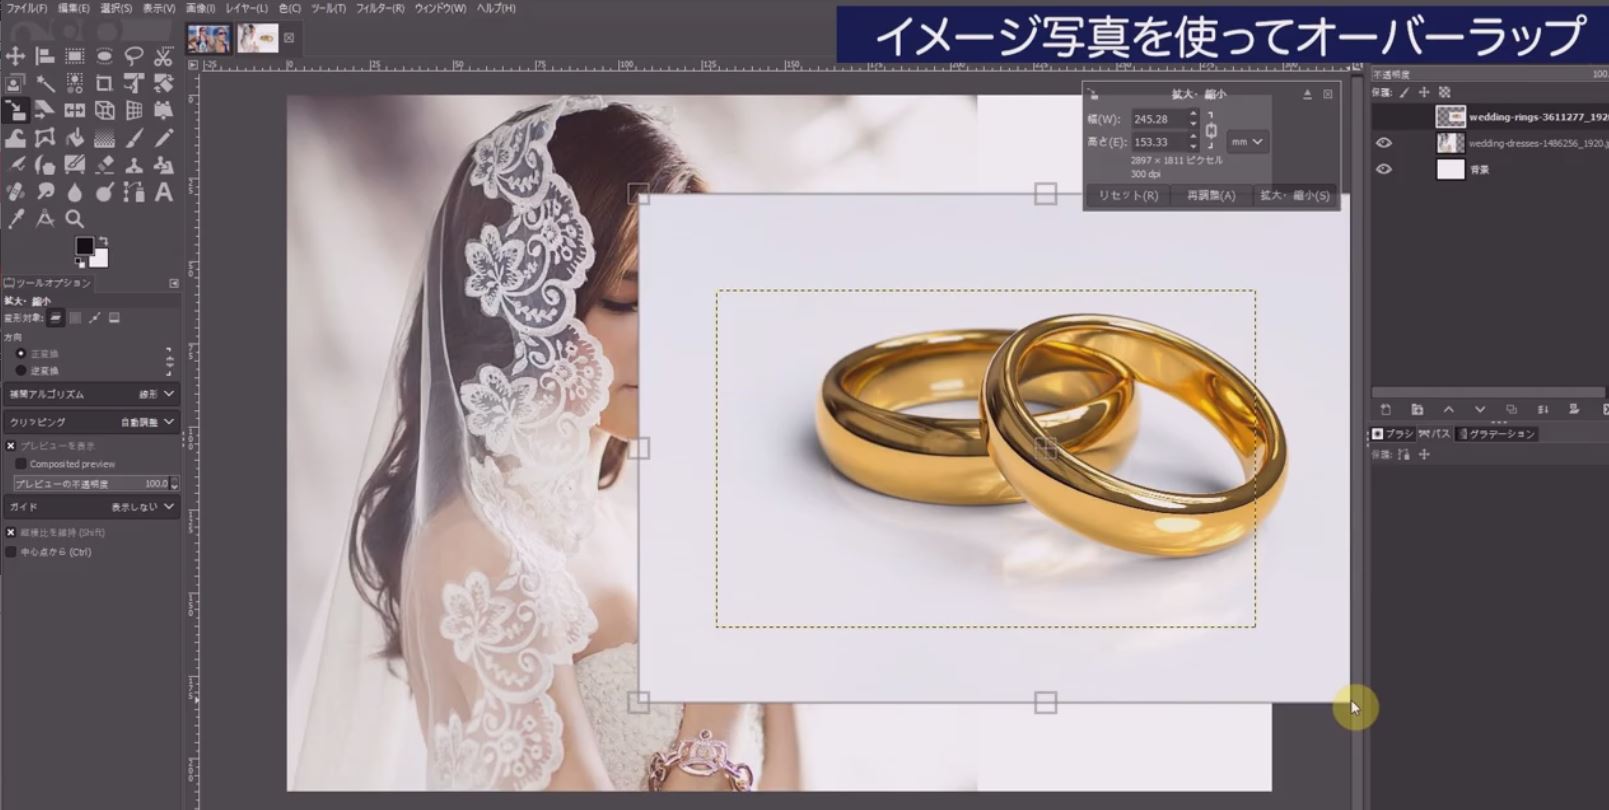 結婚指輪の写真を拡大して右側に配置します。